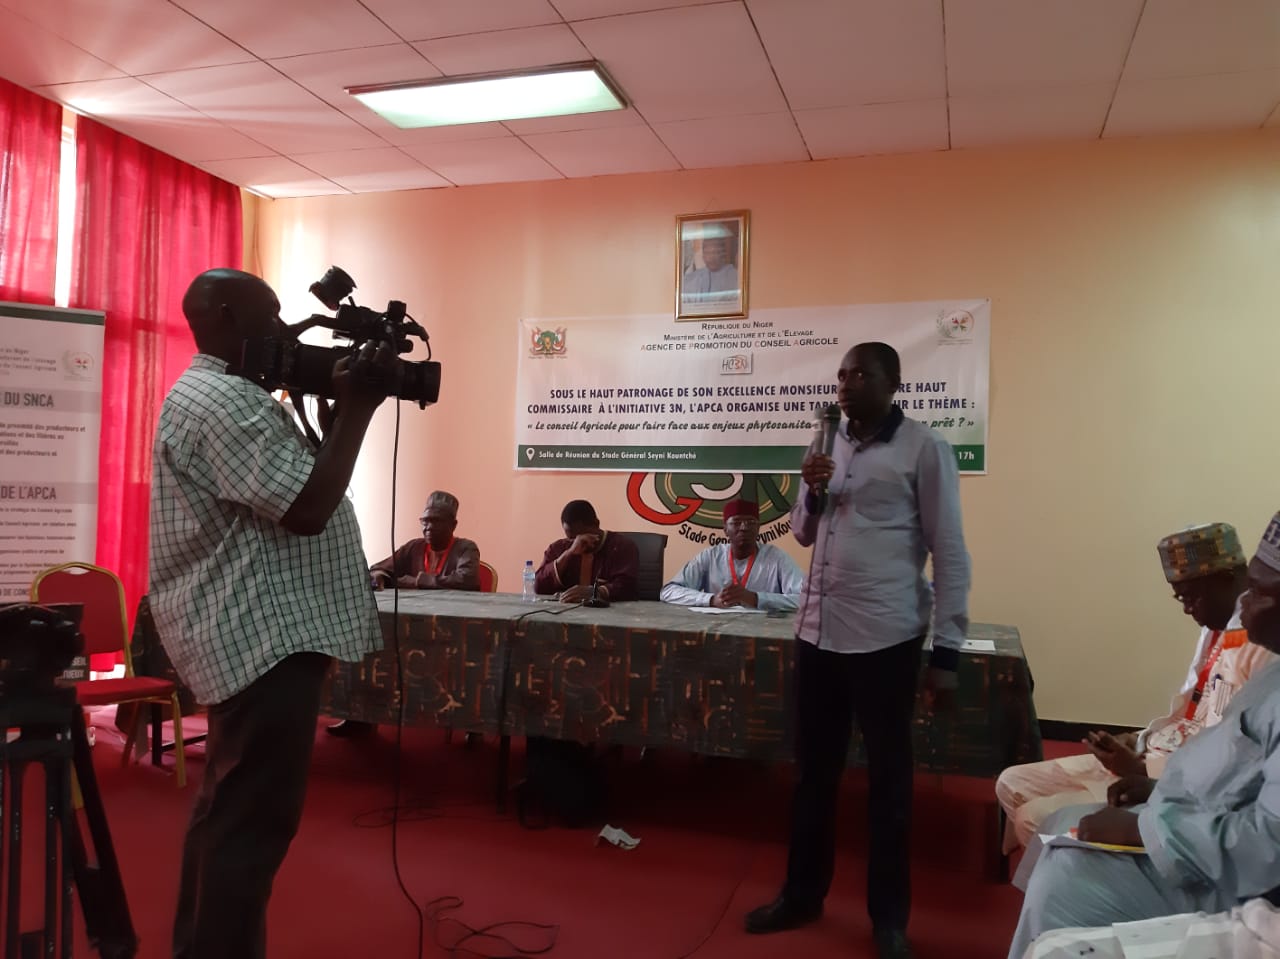 Première table ronde au SAHEL 2020: « Le conseil agricole pour faire face aux enjeux phytosanitaires au Niger : est-on prêt ? »